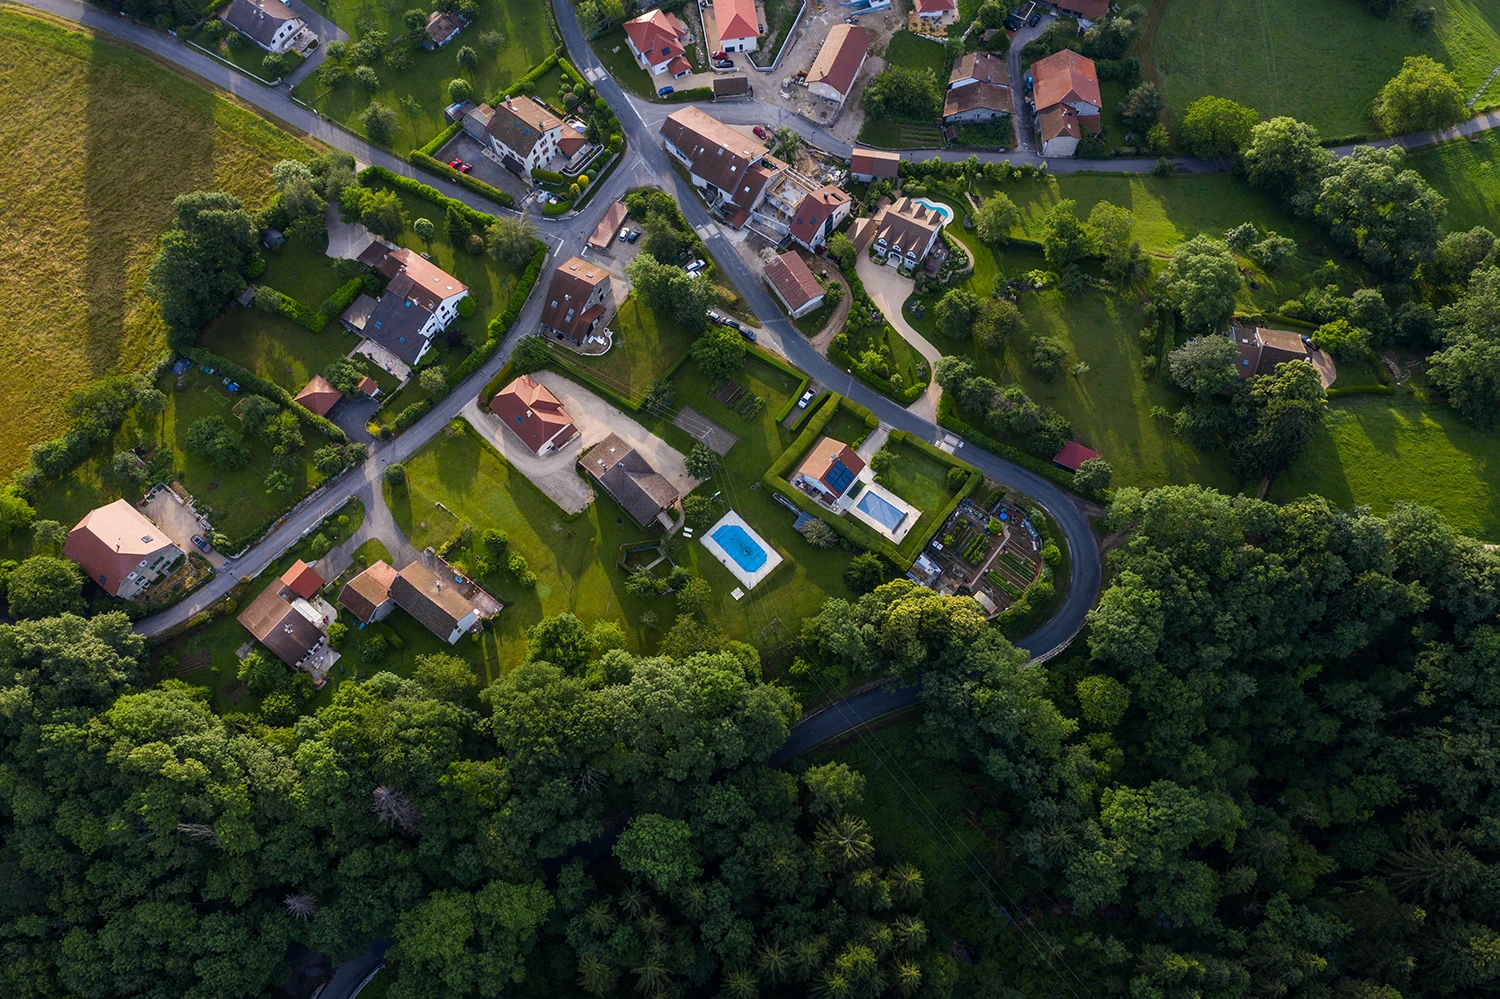 L’expertise immobilière sur Lyon et le pays de Gex en Rhône Alpes avec le Groupe Evalis, une équipe d’experts immobiliers certifiés et agréés près des tribunaux